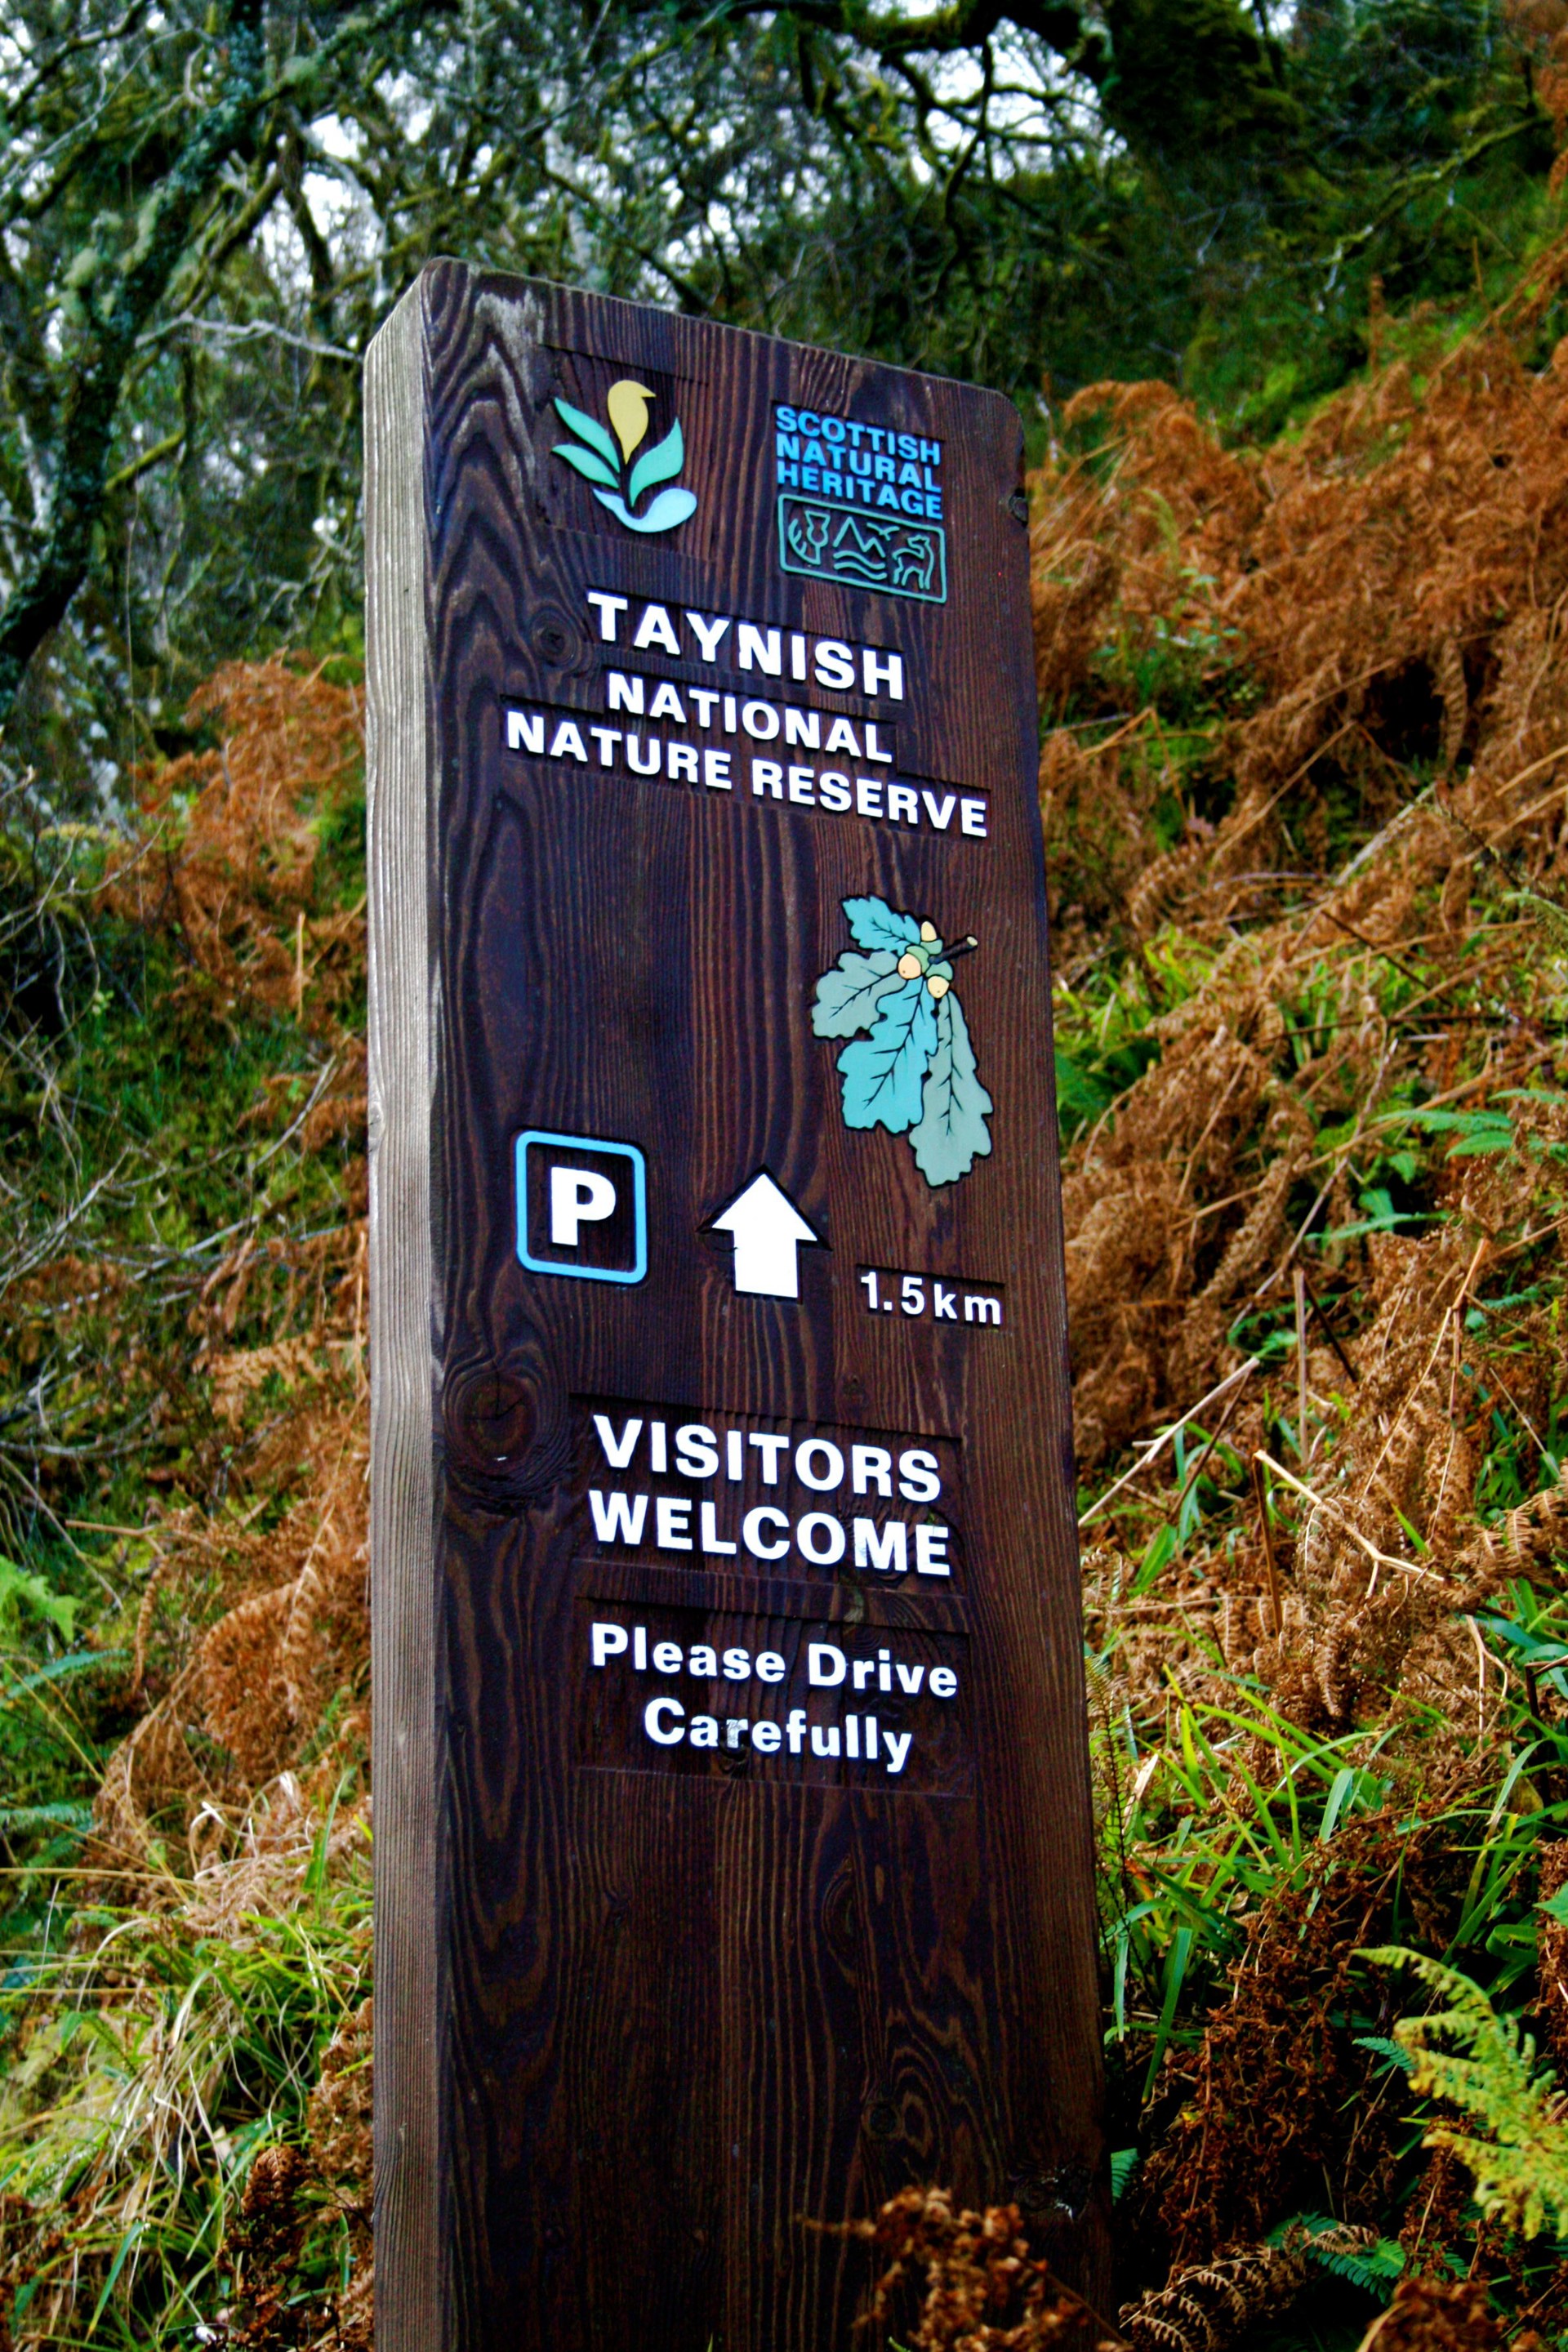 Background image - Taynish Nature Reserve